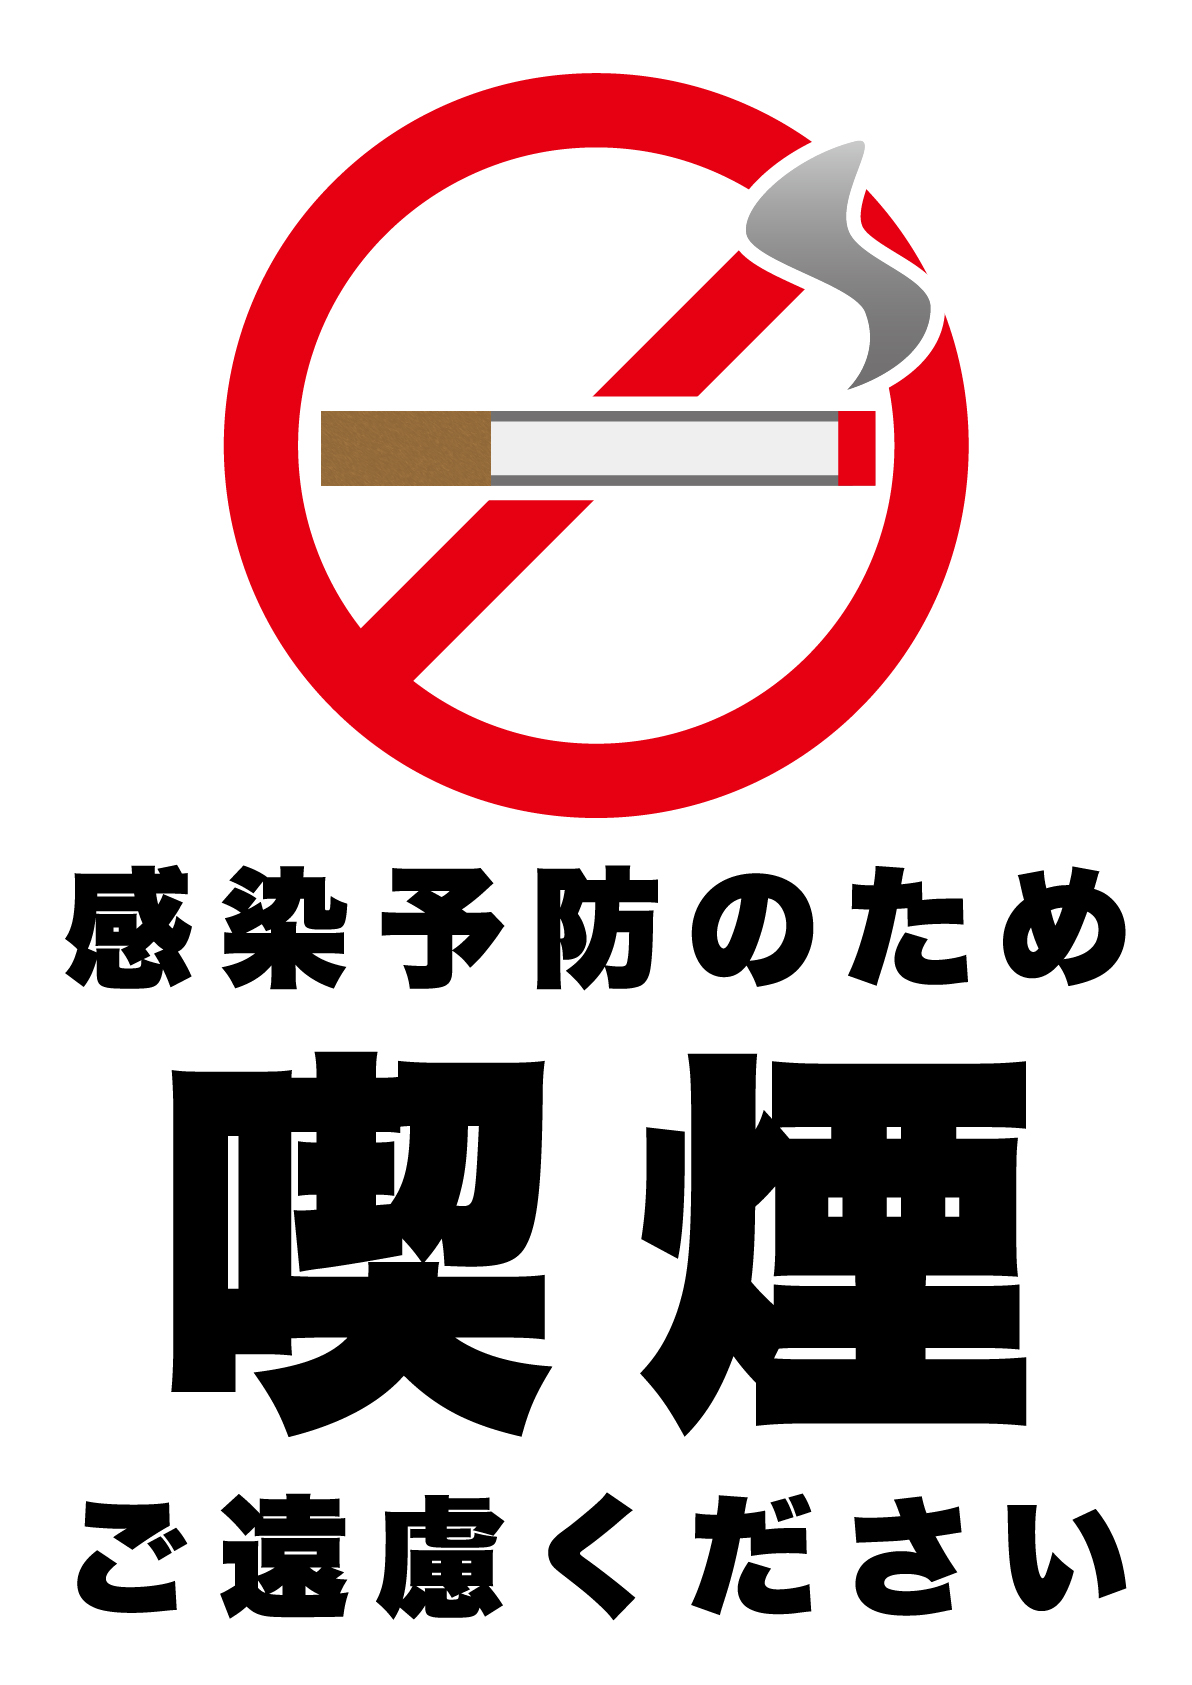 感染予防のため喫煙はご遠慮くださいの張り紙